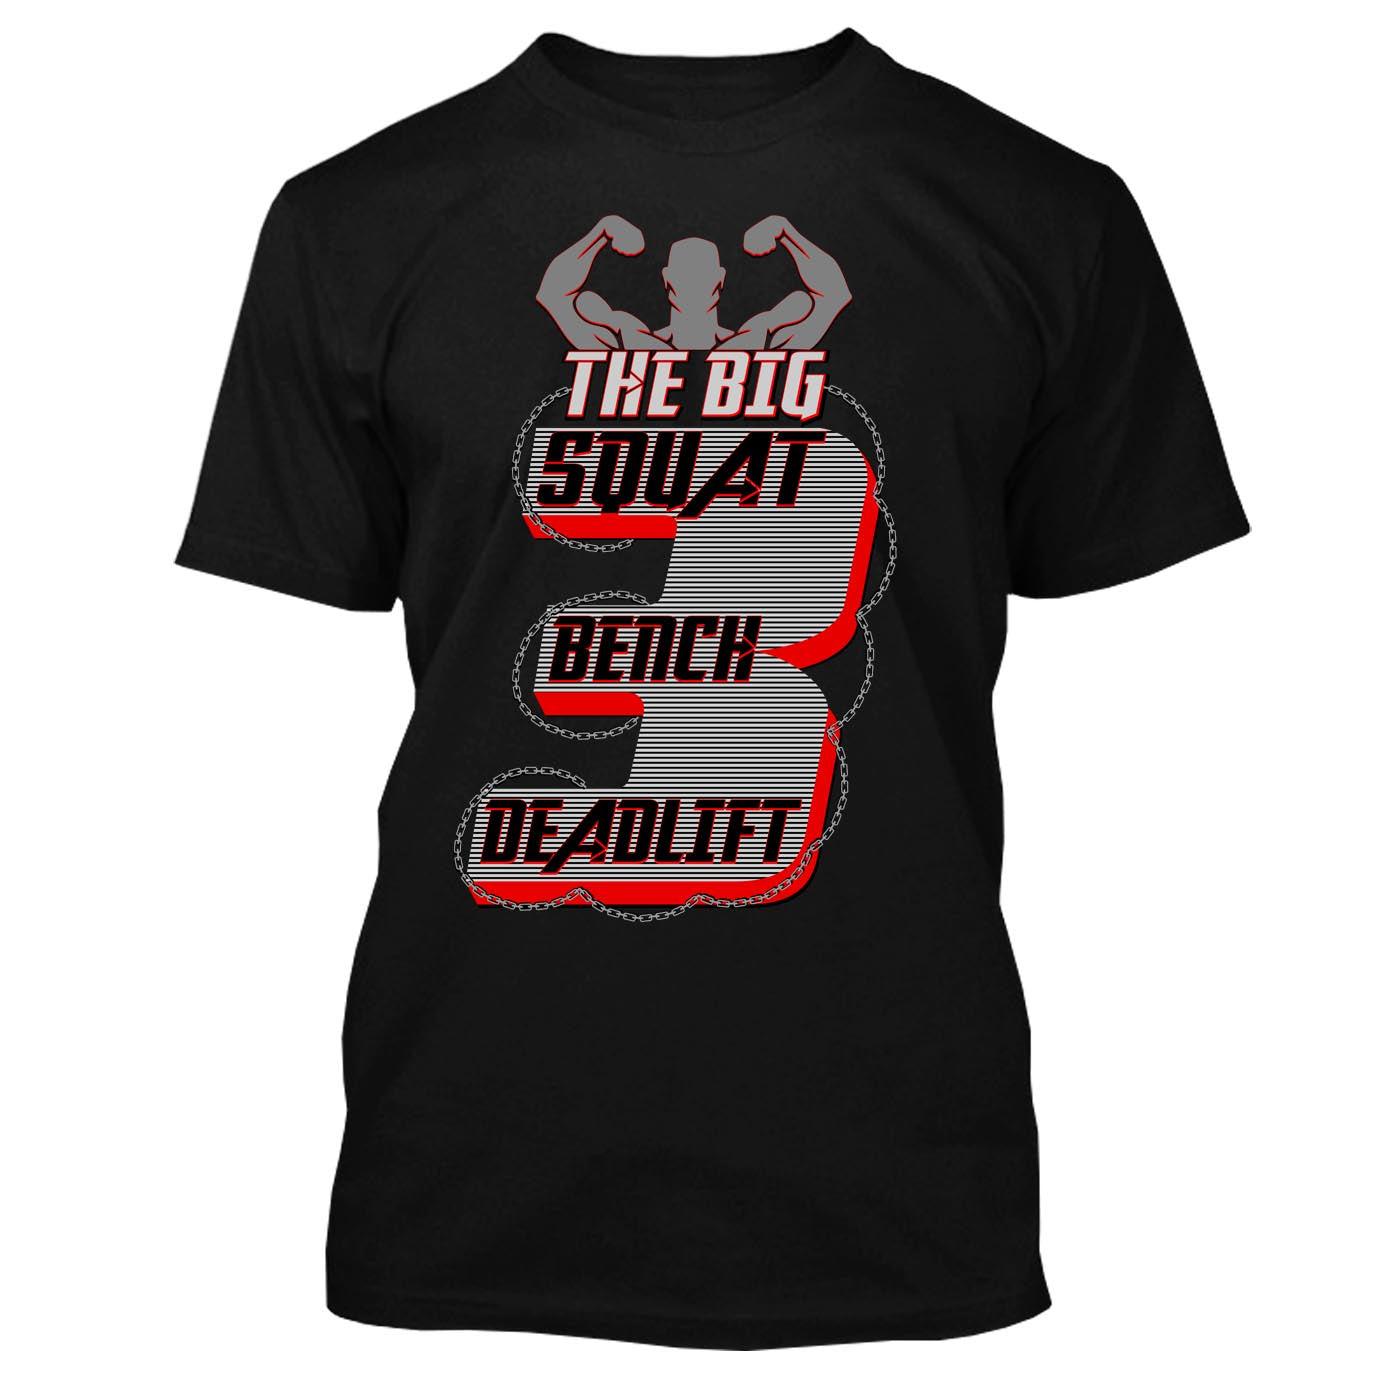 Squat Bench Press & Deadlift Workout T-shirt